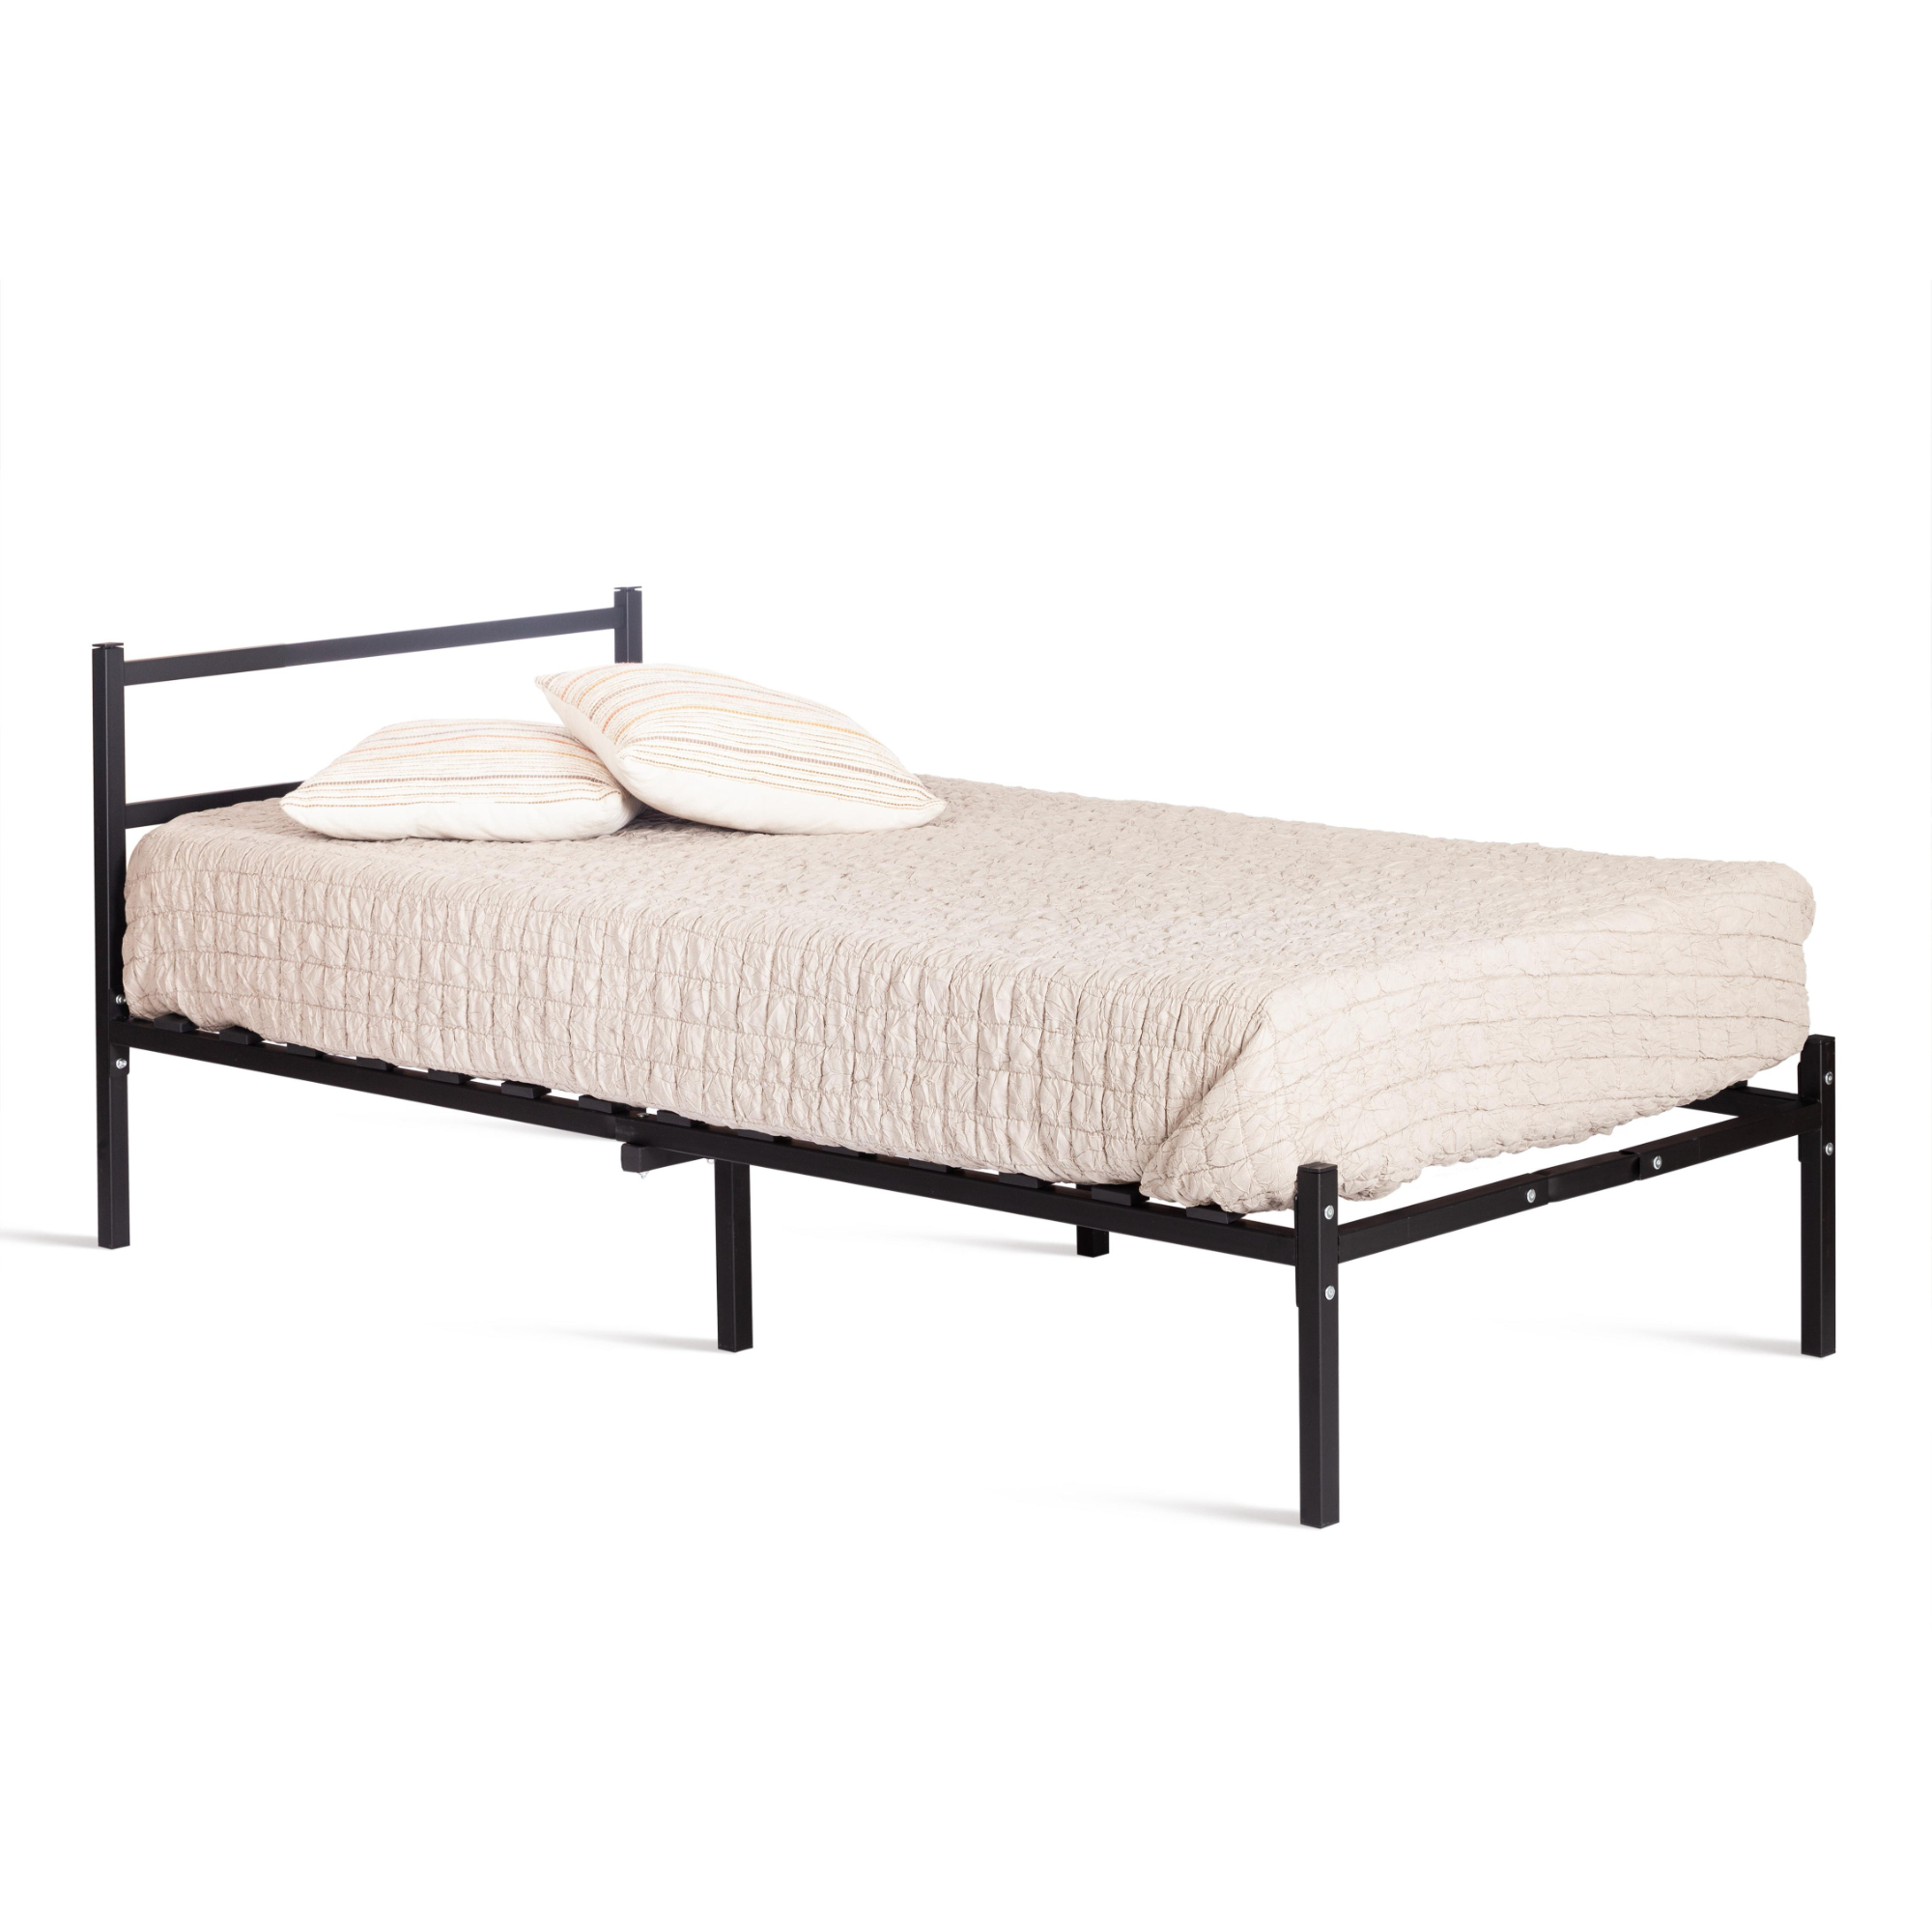 Кровать ТС Marco односпальная металлическая черная 90х200 см, цвет черный, размер 90х200